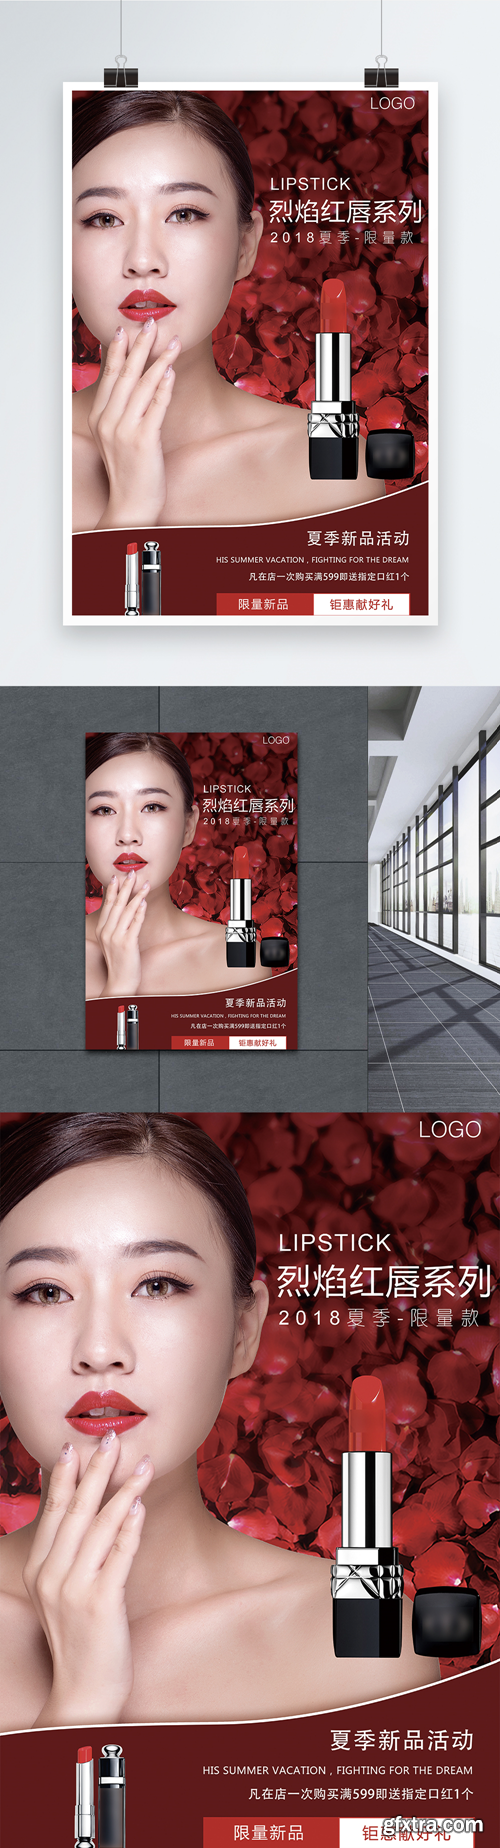 fashion make up lipstick posters